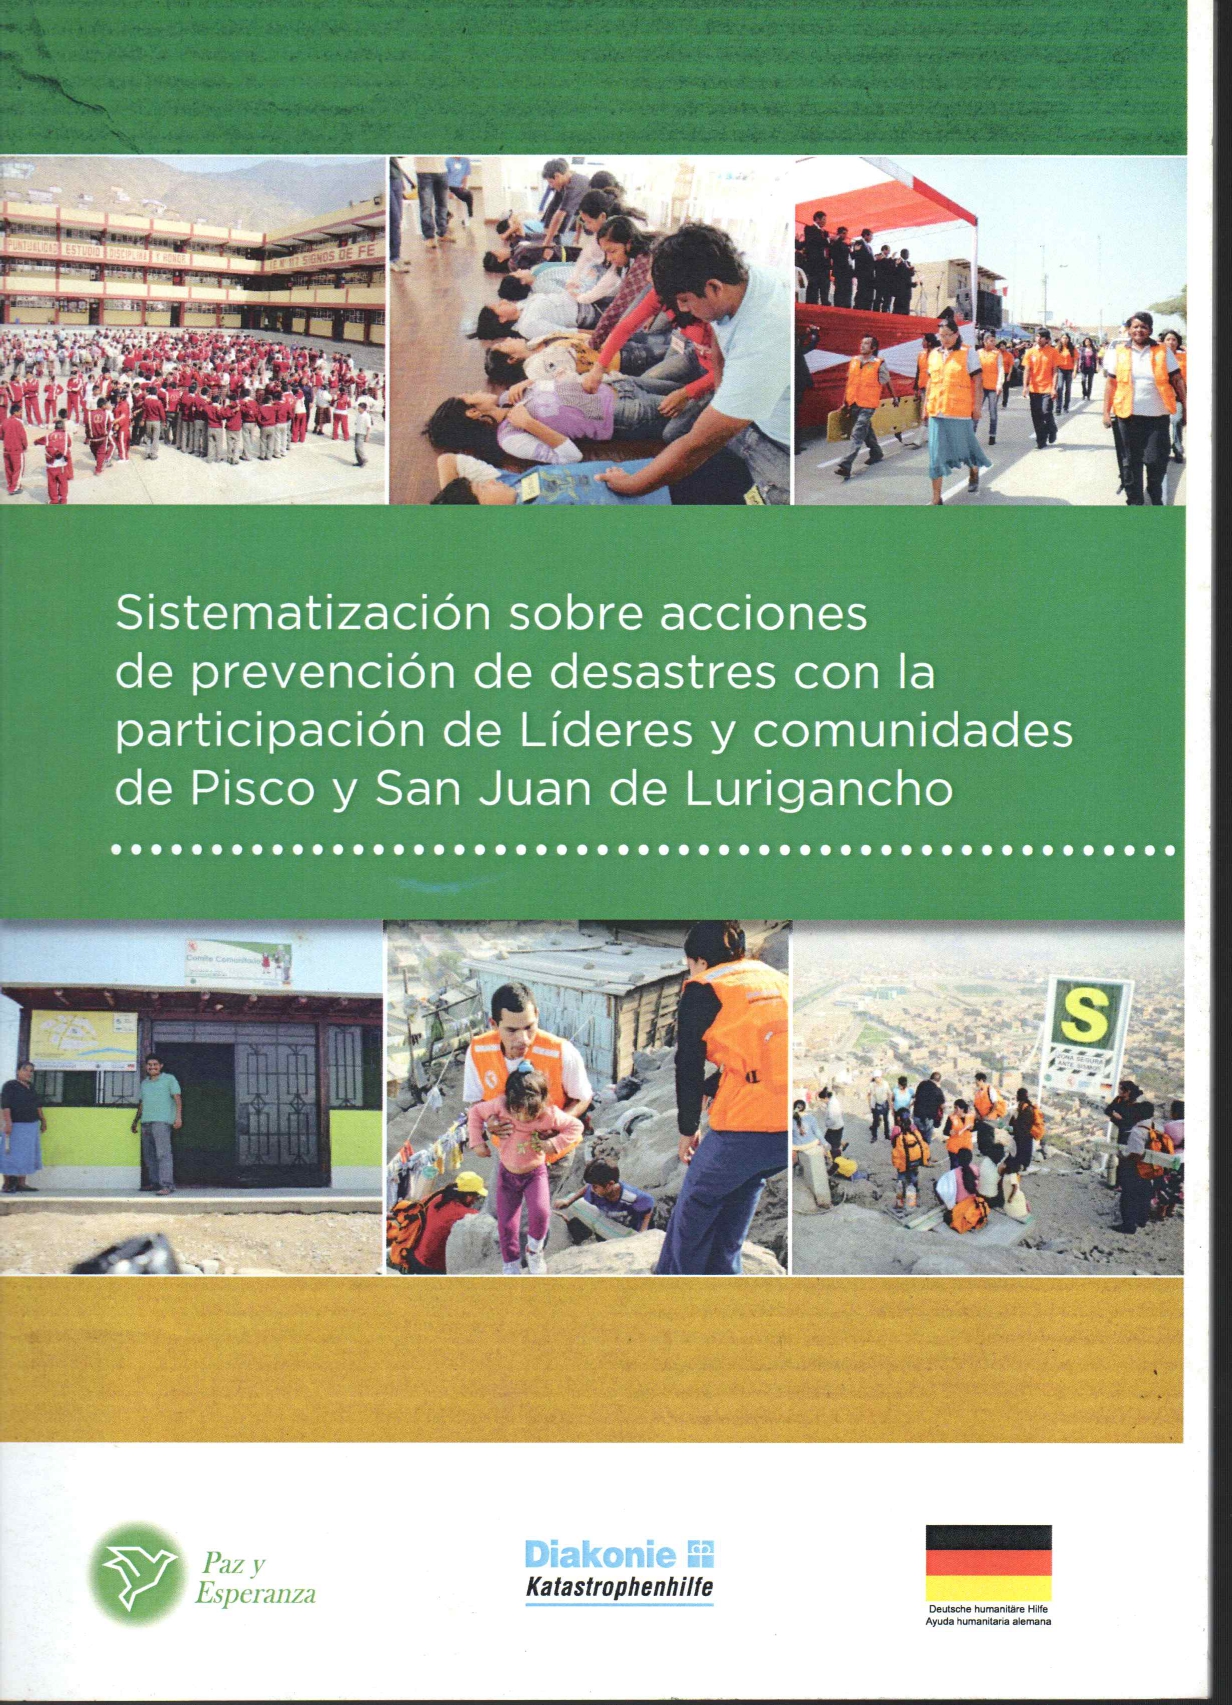 Imágenes relacionadas a las acciones que realizan los encargados de defensa civil, tales como: simulacro de sismos en los colegios, ayuda a los niños, simulación de intervención a heridos.